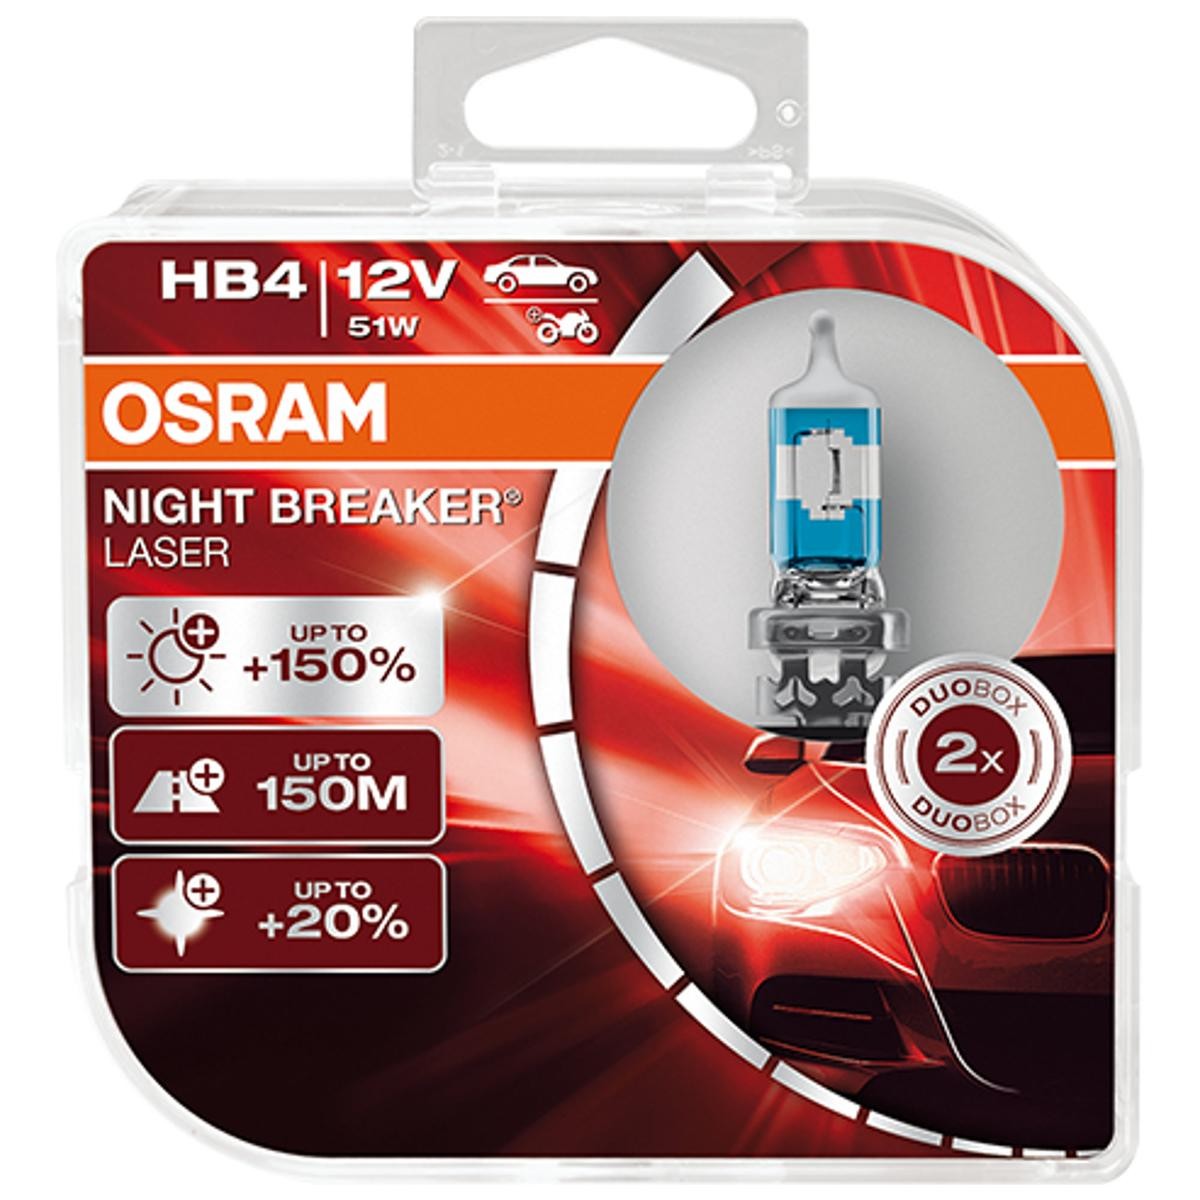 OSRAM Night Breaker Laser (Next Generation) HB4